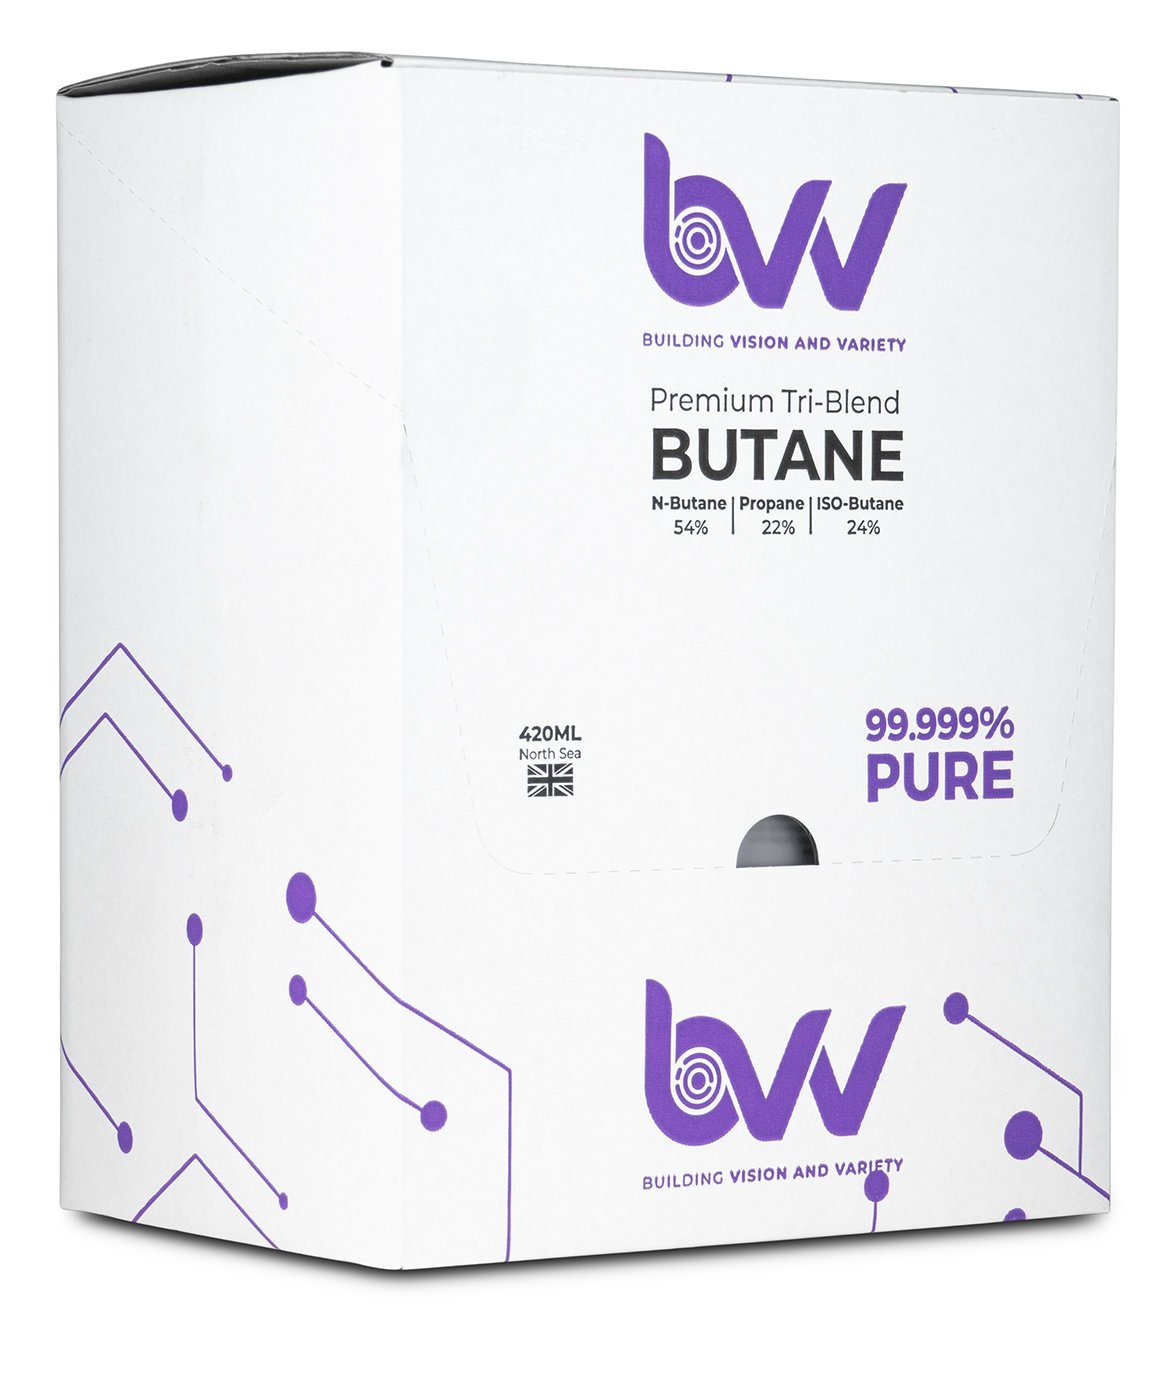 BVV 420ml Premium Tri-Blend Butane 99.999% Pure in packaging